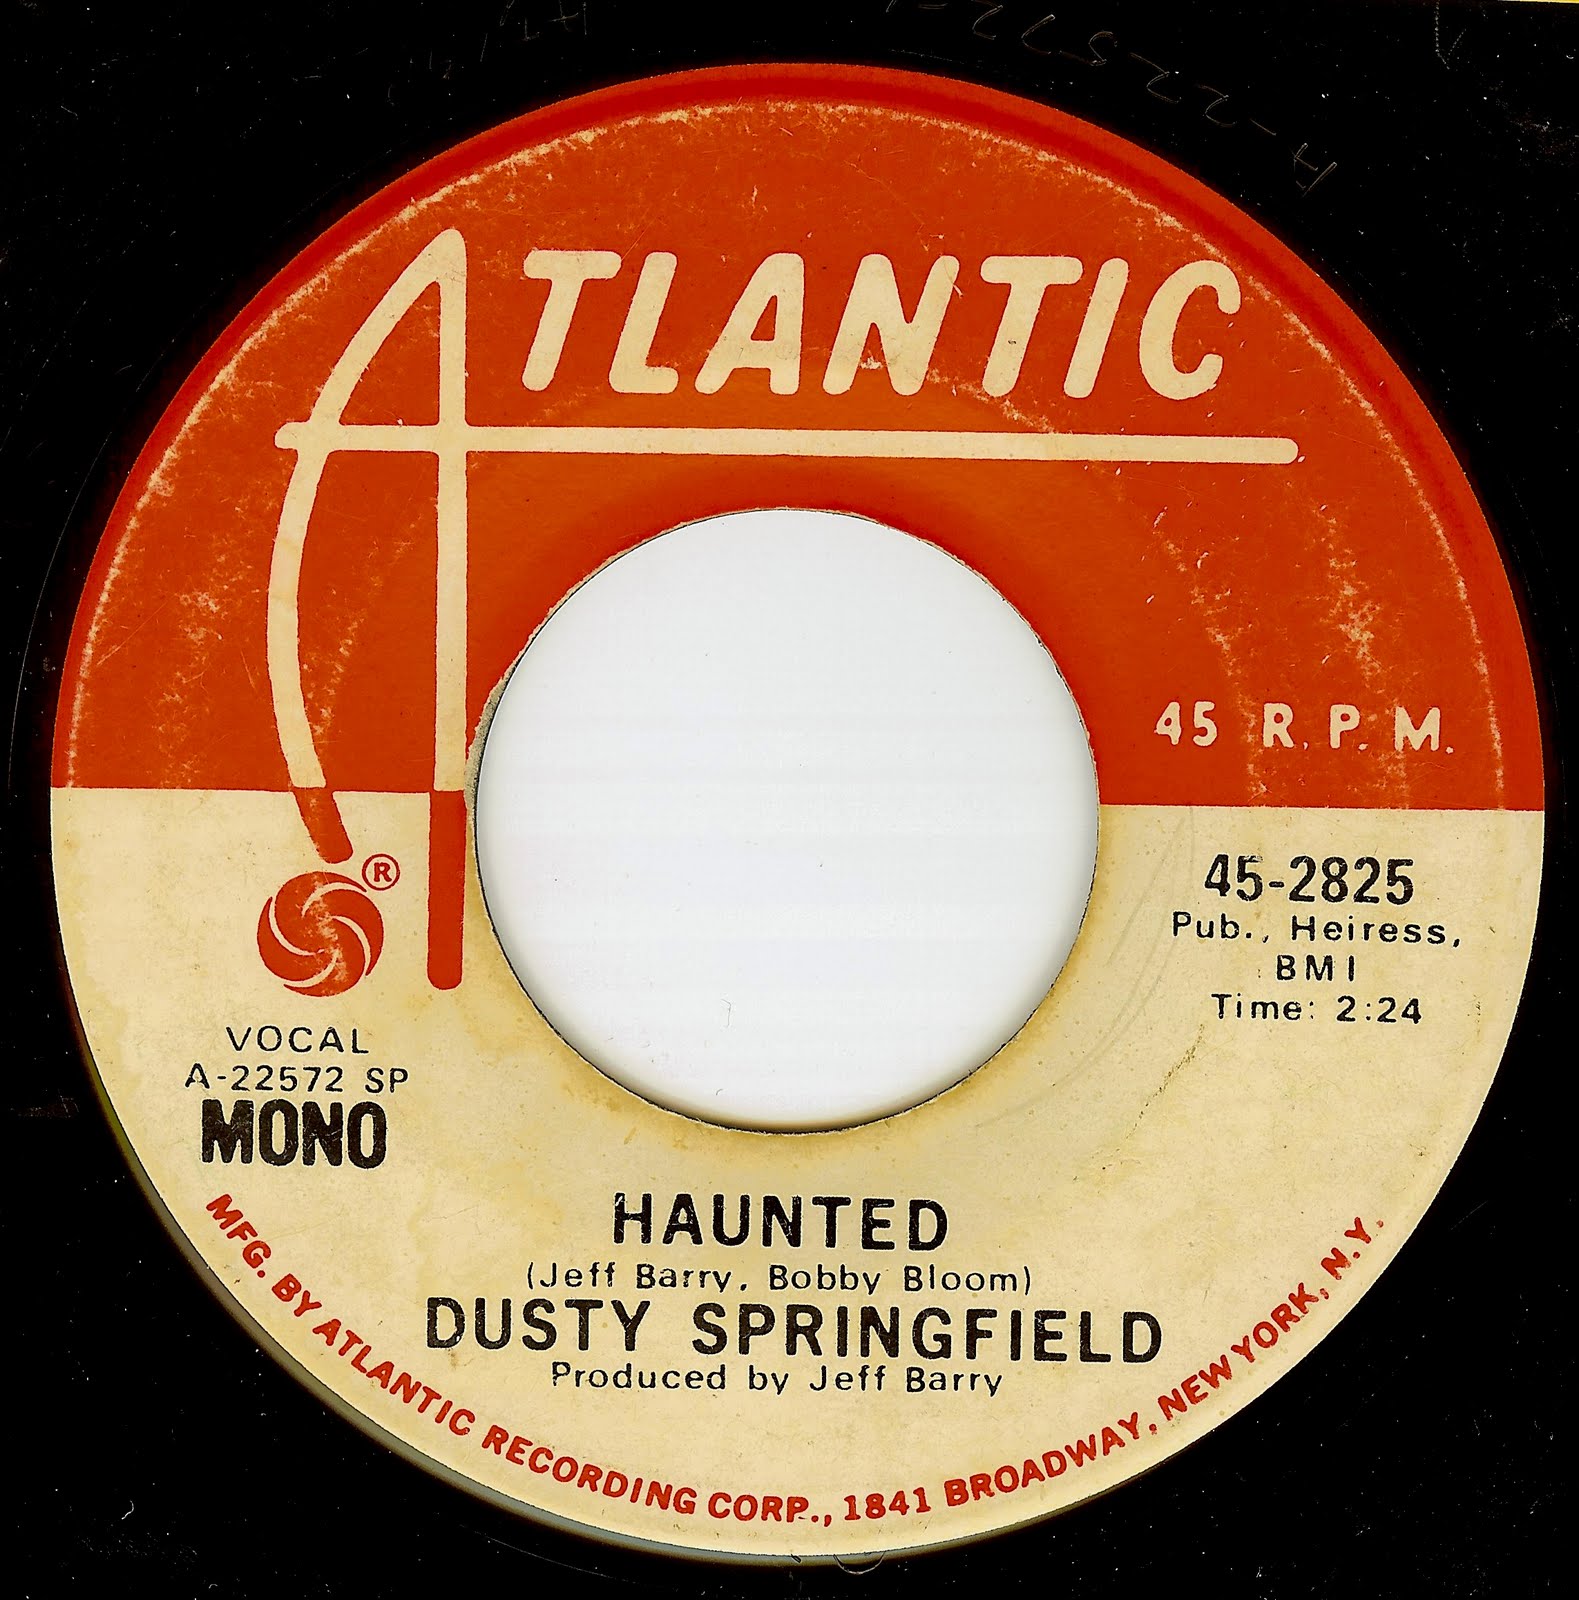 Dusty перевод. Atlantic records. Dusty Springfield песни mp3. Текст песни Haunted. Dusty Springfield в молодости.